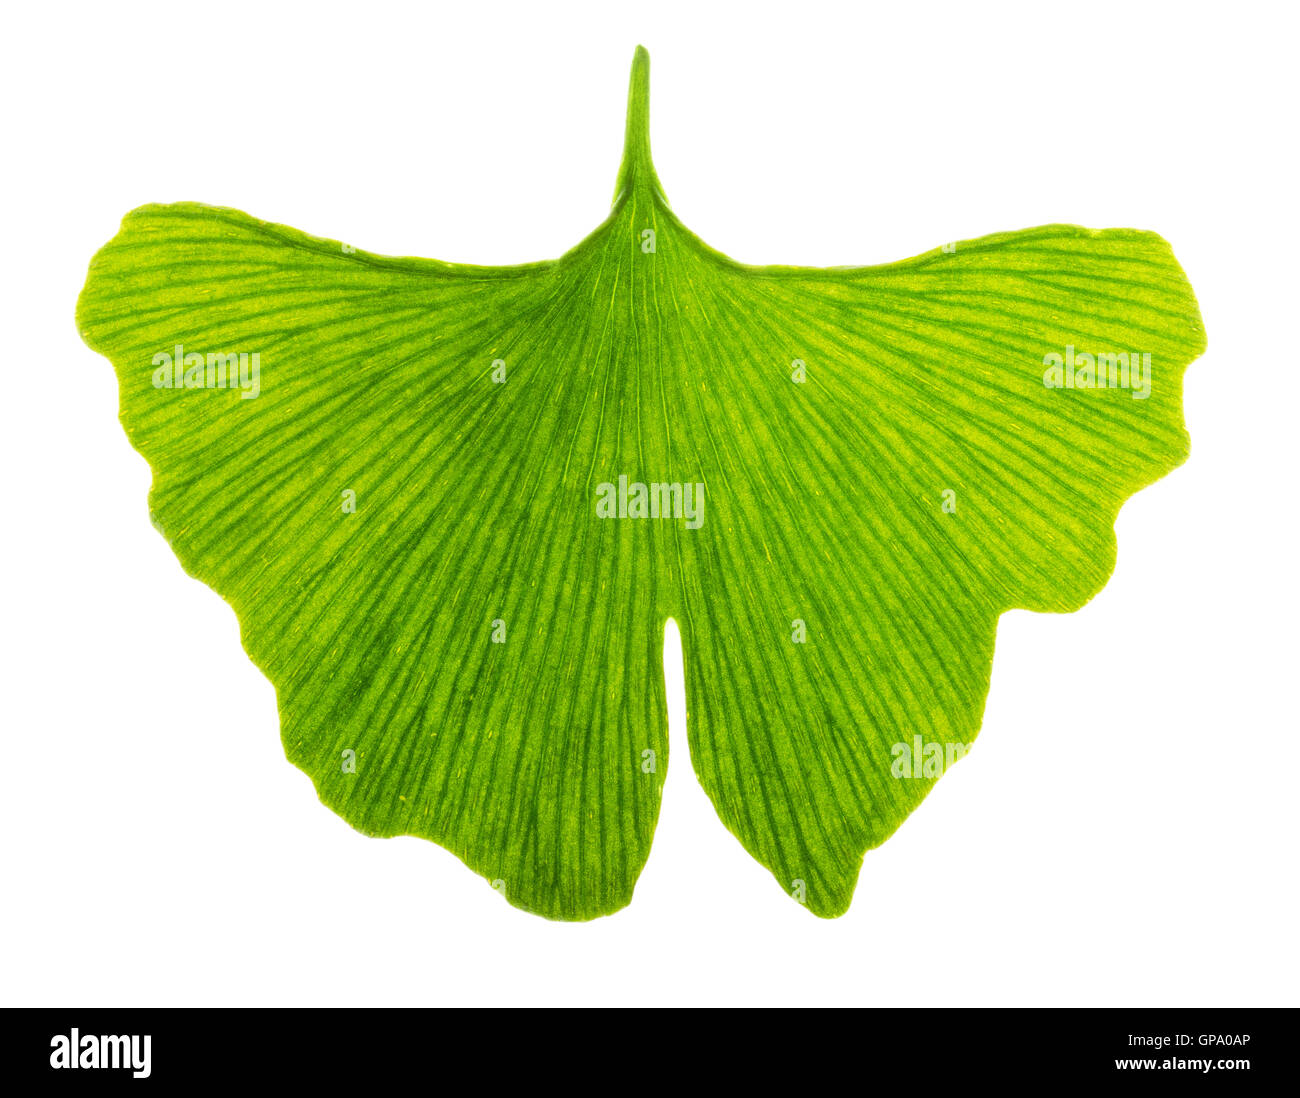 Ginkgo biloba leaf translucide en lumière transmise. La lumière passe à travers une feuille de Ginkgo. Également arbre aux 40 écus. Banque D'Images